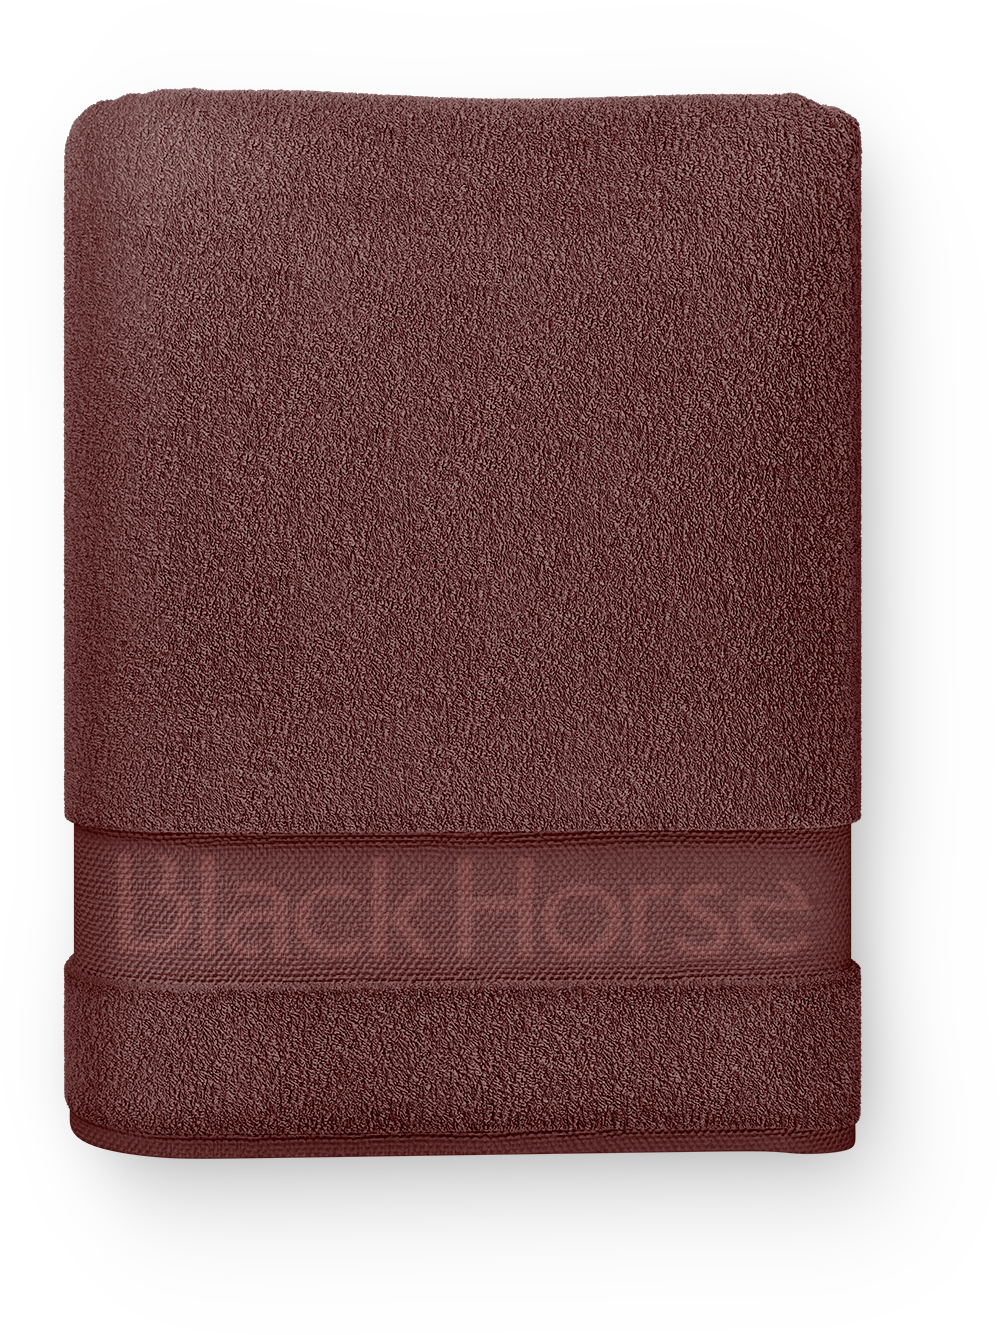 blackhorse_towel06